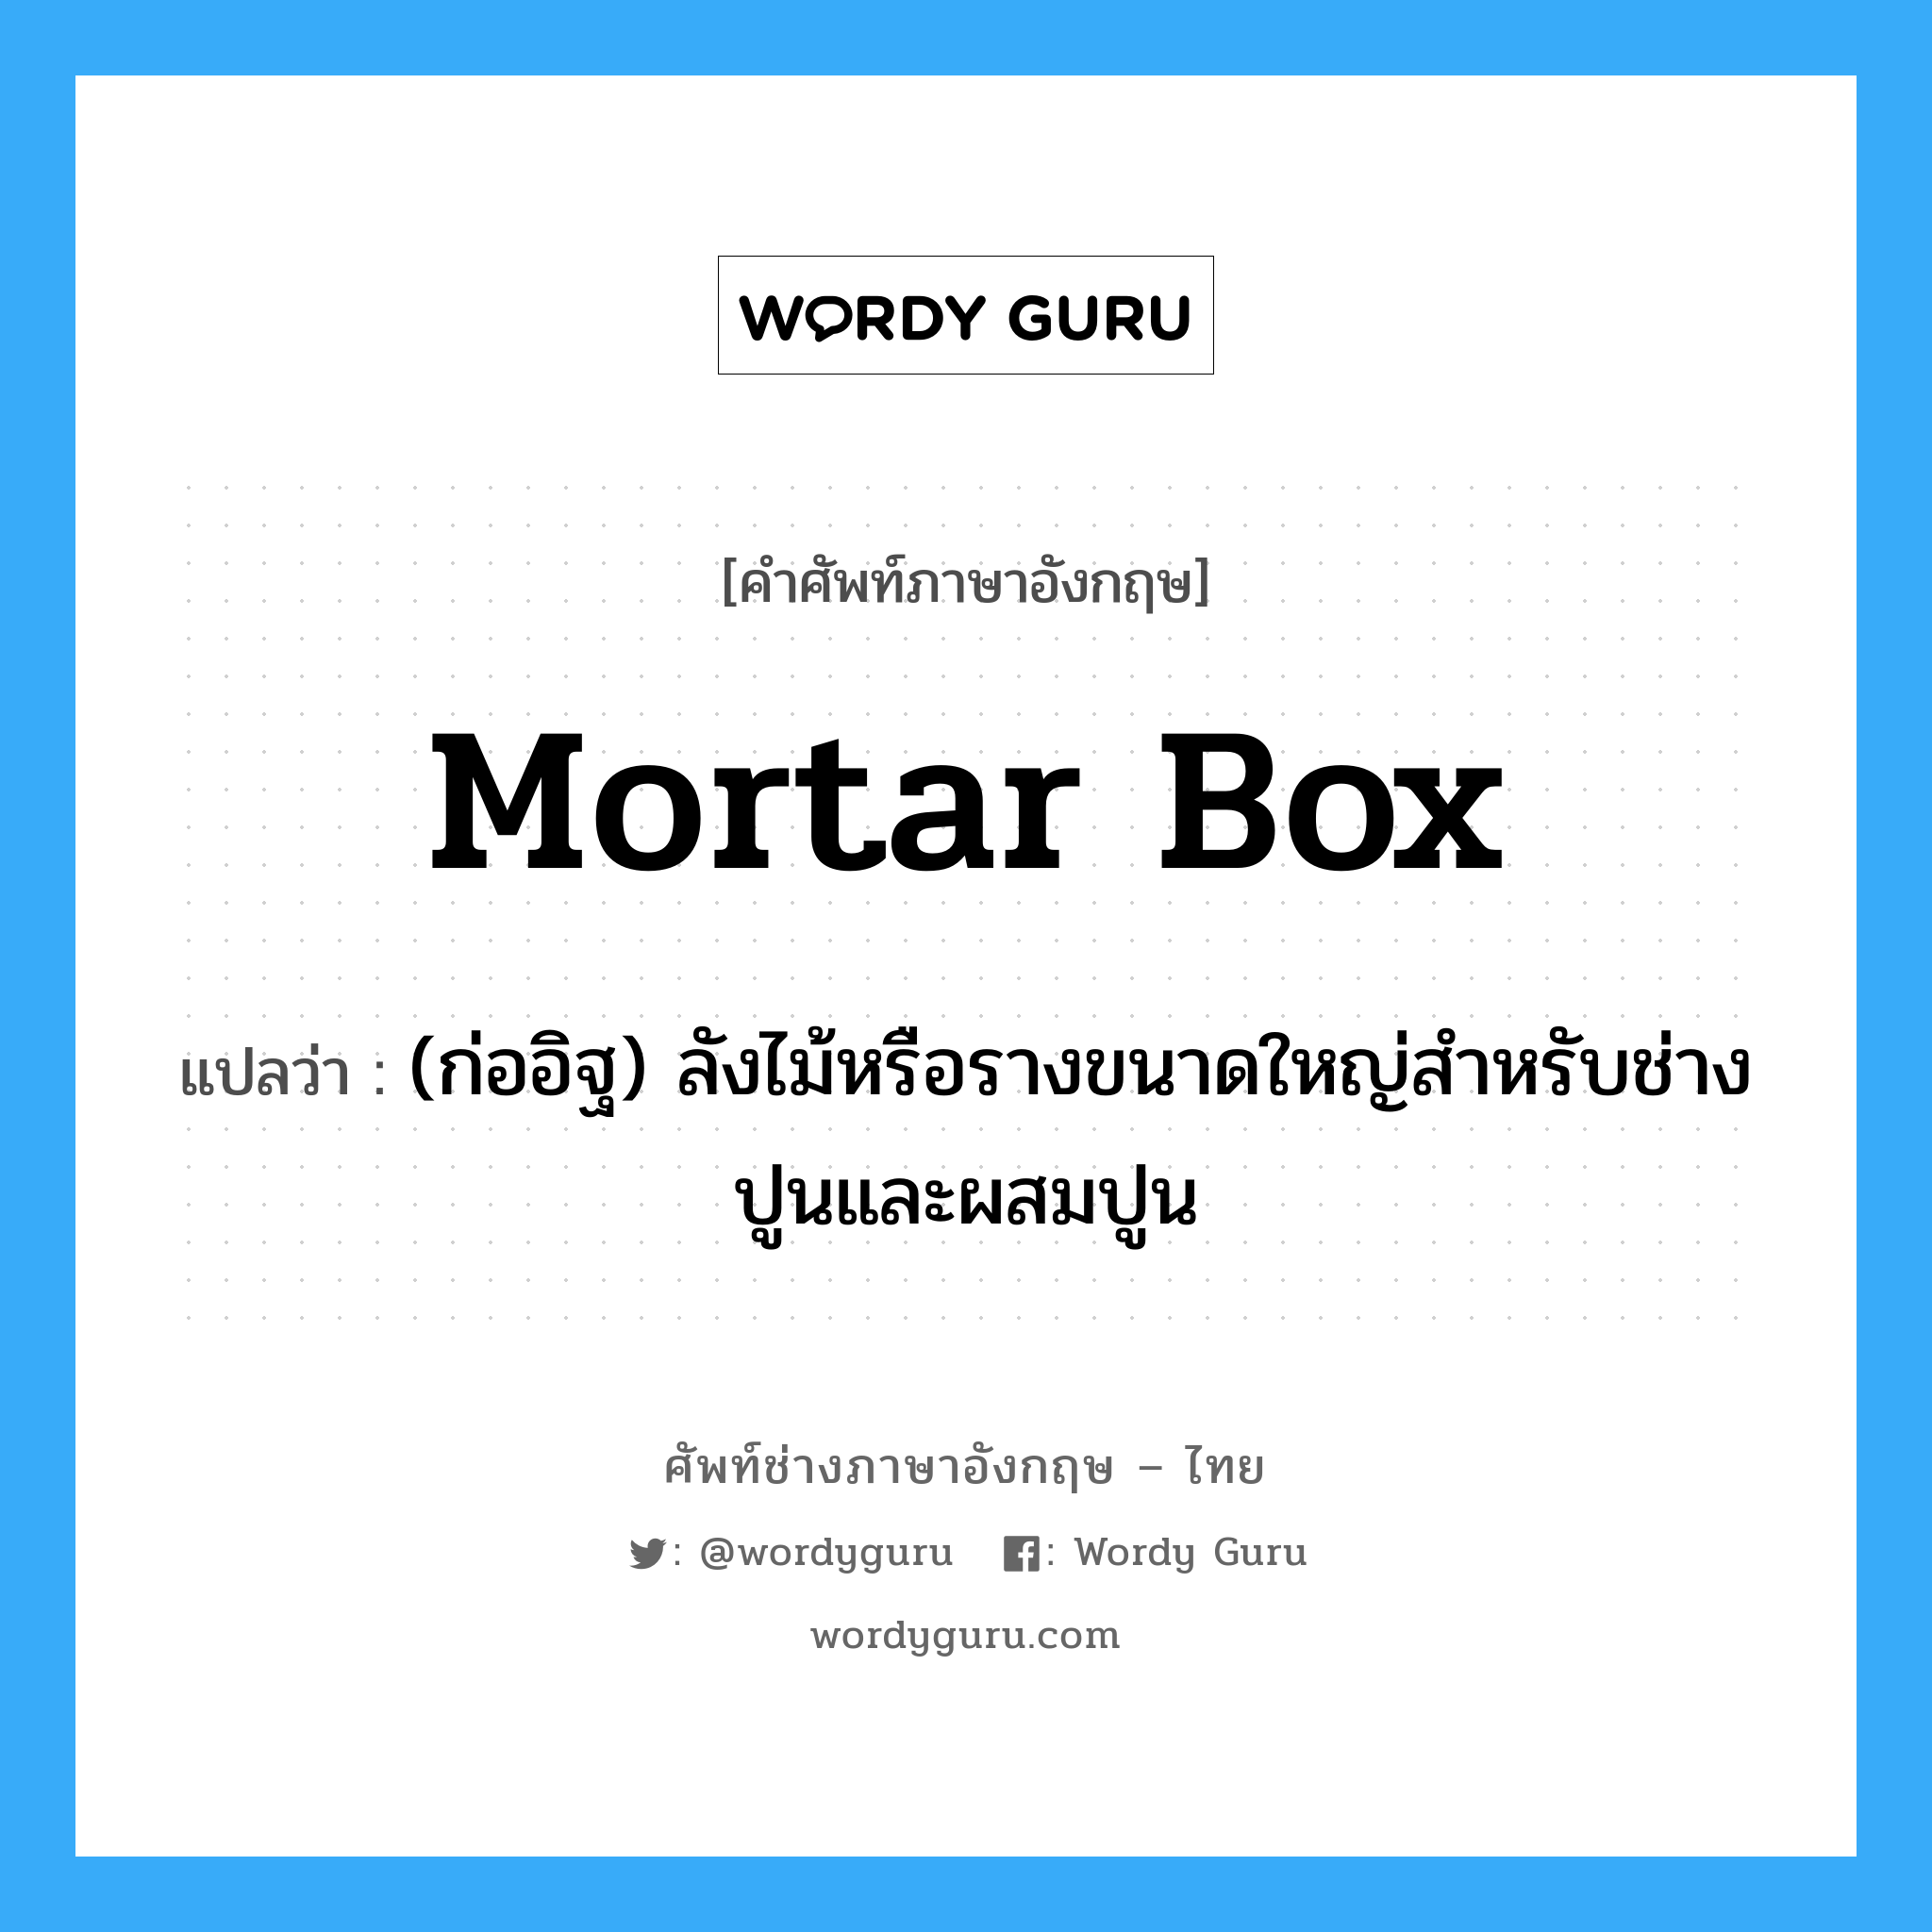 mortar box แปลว่า?, คำศัพท์ช่างภาษาอังกฤษ - ไทย mortar box คำศัพท์ภาษาอังกฤษ mortar box แปลว่า (ก่ออิฐ) ลังไม้หรือรางขนาดใหญ่สำหรับช่างปูนและผสมปูน